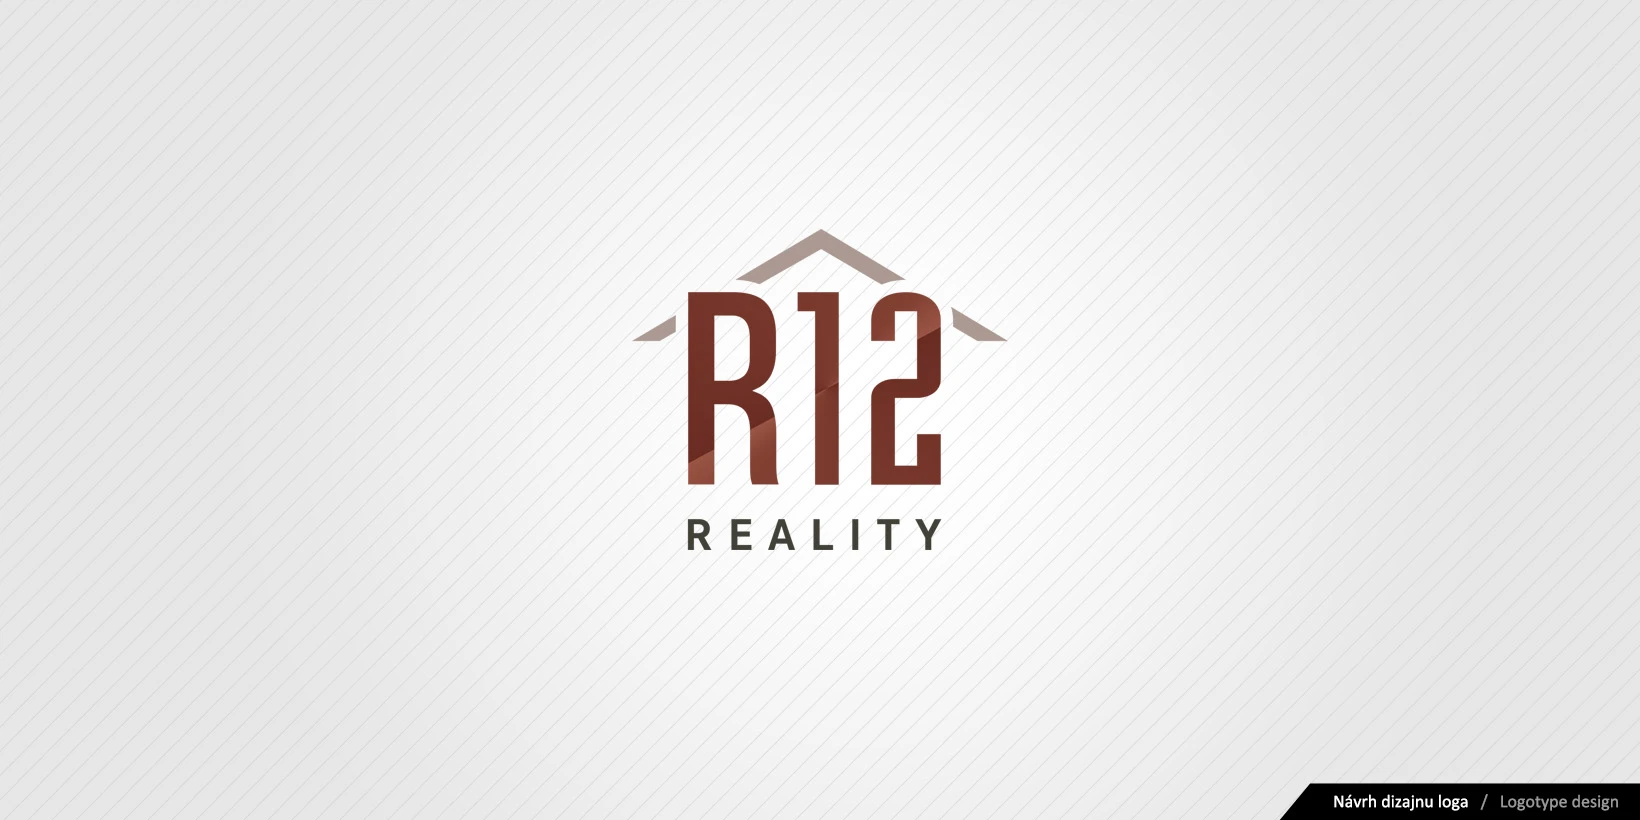 Vytvorenie logotypu R12